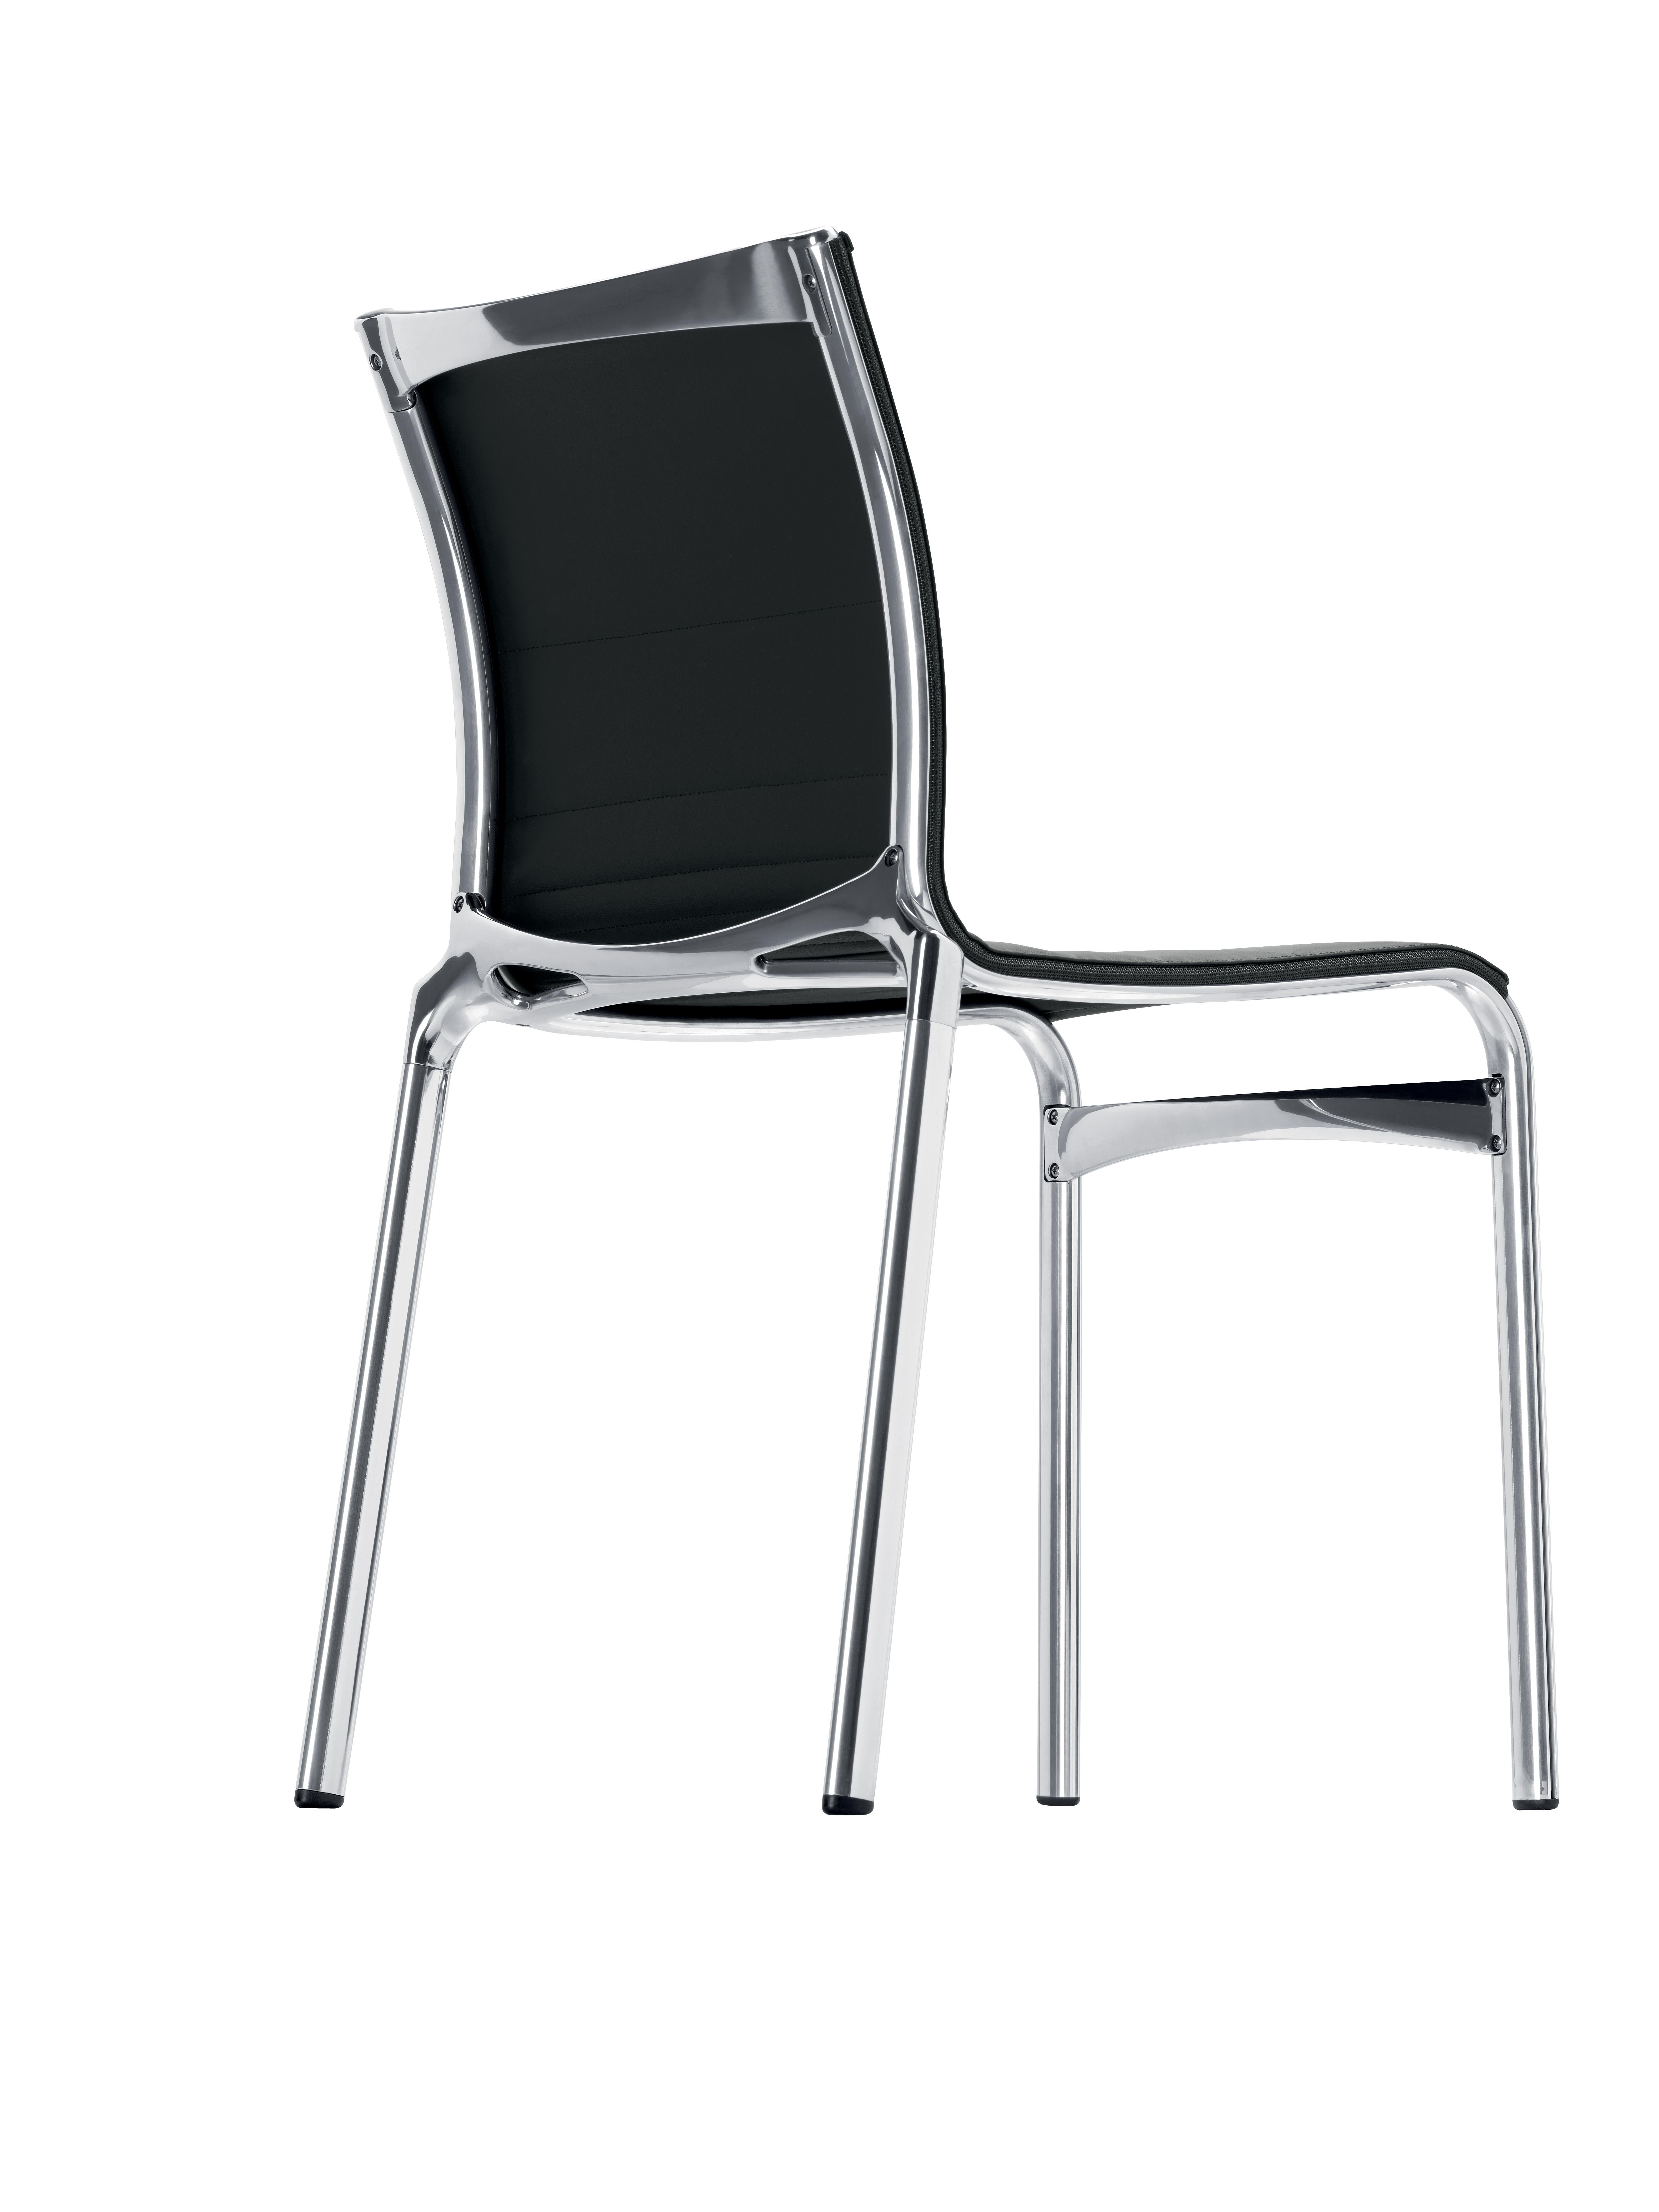 Alias Bigframe 44 stuhl mit schwarzer lederpolsterung und verchromtem aluminiumgestell by Alberto Meda

Stapelbarer Stuhl mit einer Struktur aus stranggepresstem Aluminiumprofil und Elementen aus Aluminiumdruckguss. Sitz und Rückenlehne aus